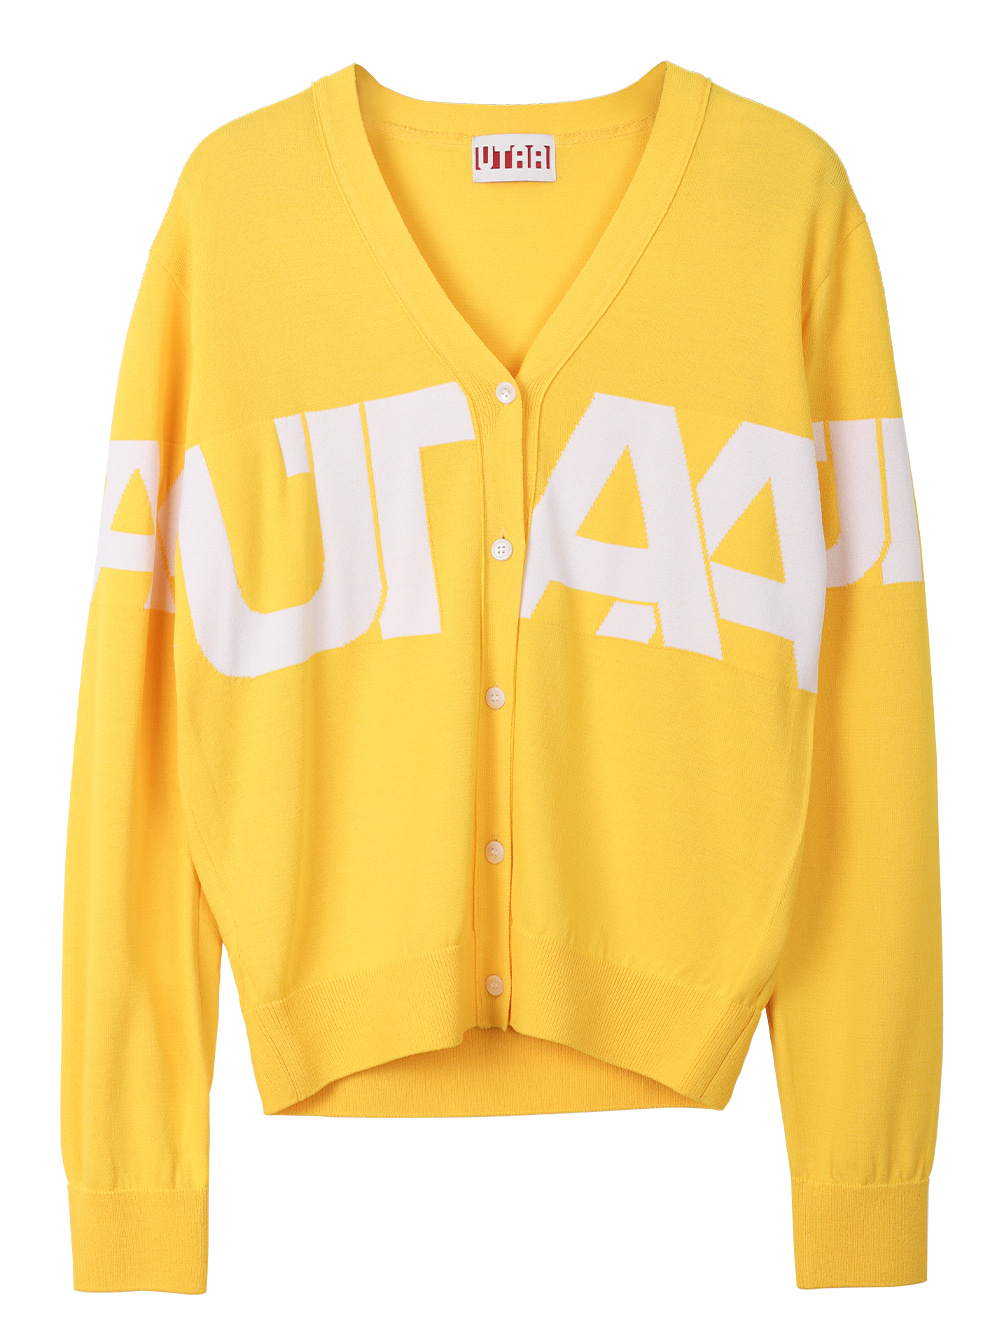 UTAA Midday Academic Cardigan : Yellow (UB3KCF404YE)